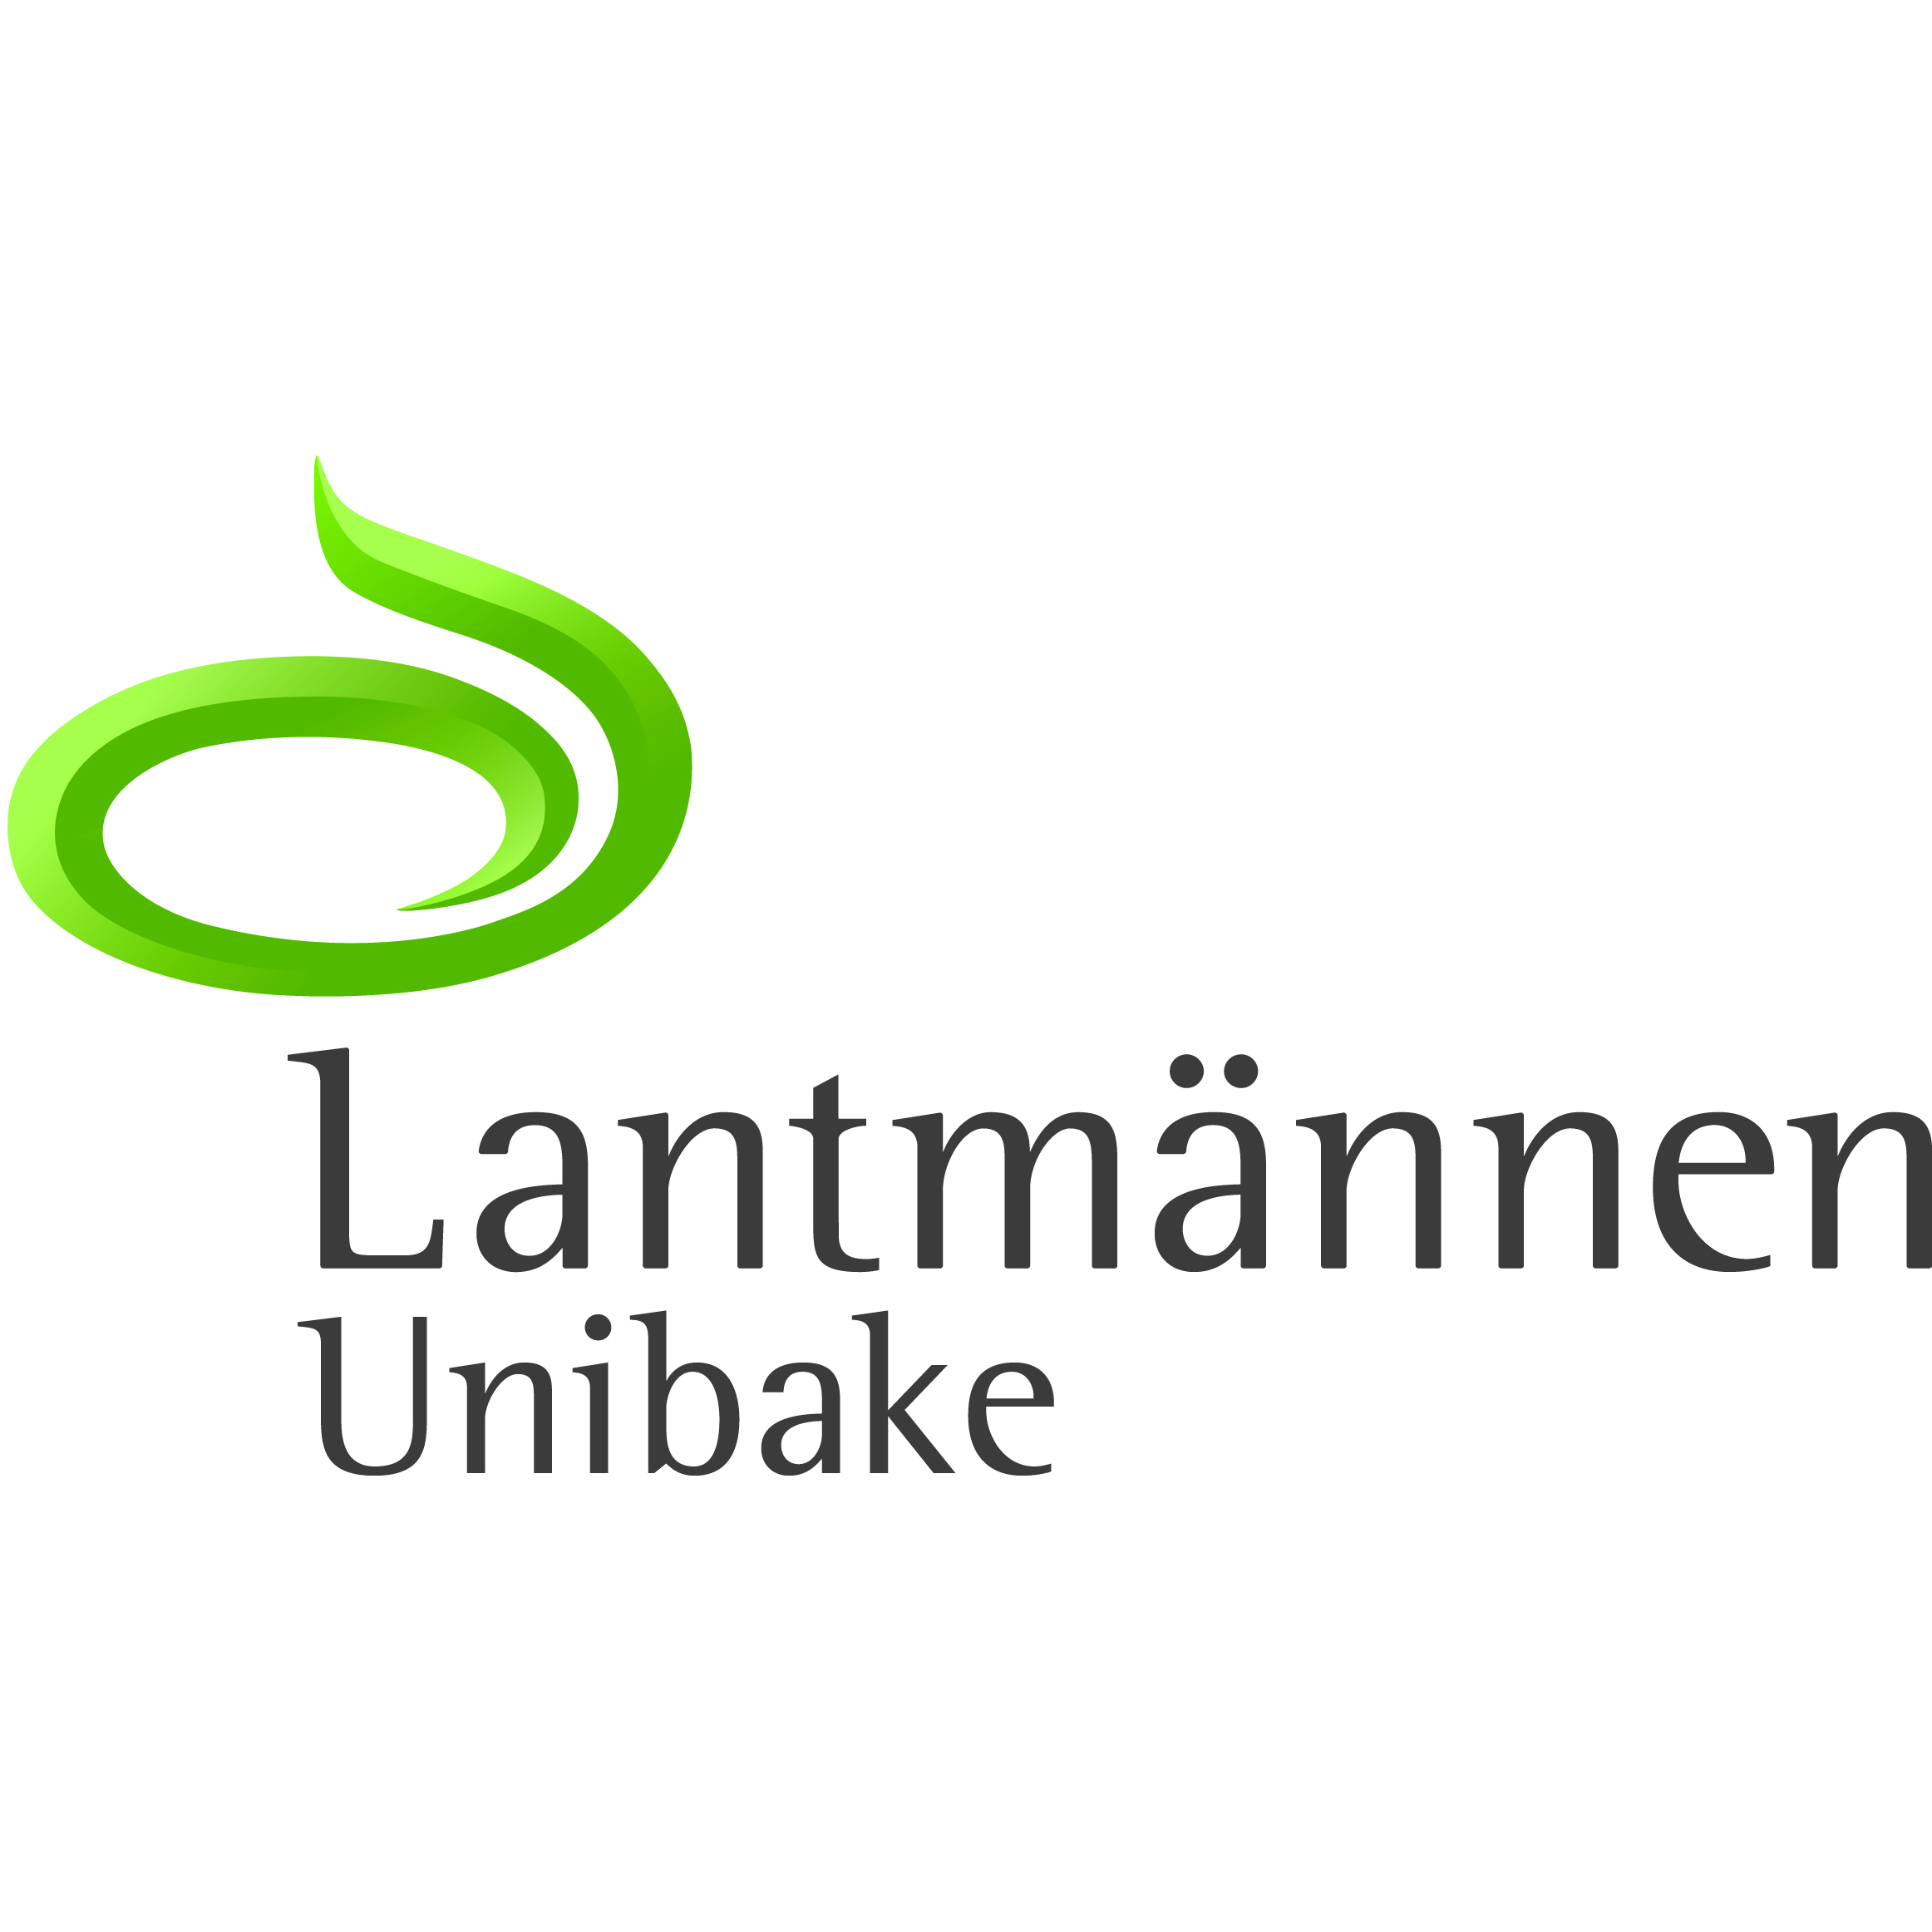 Lantmannen_8x8.jpg